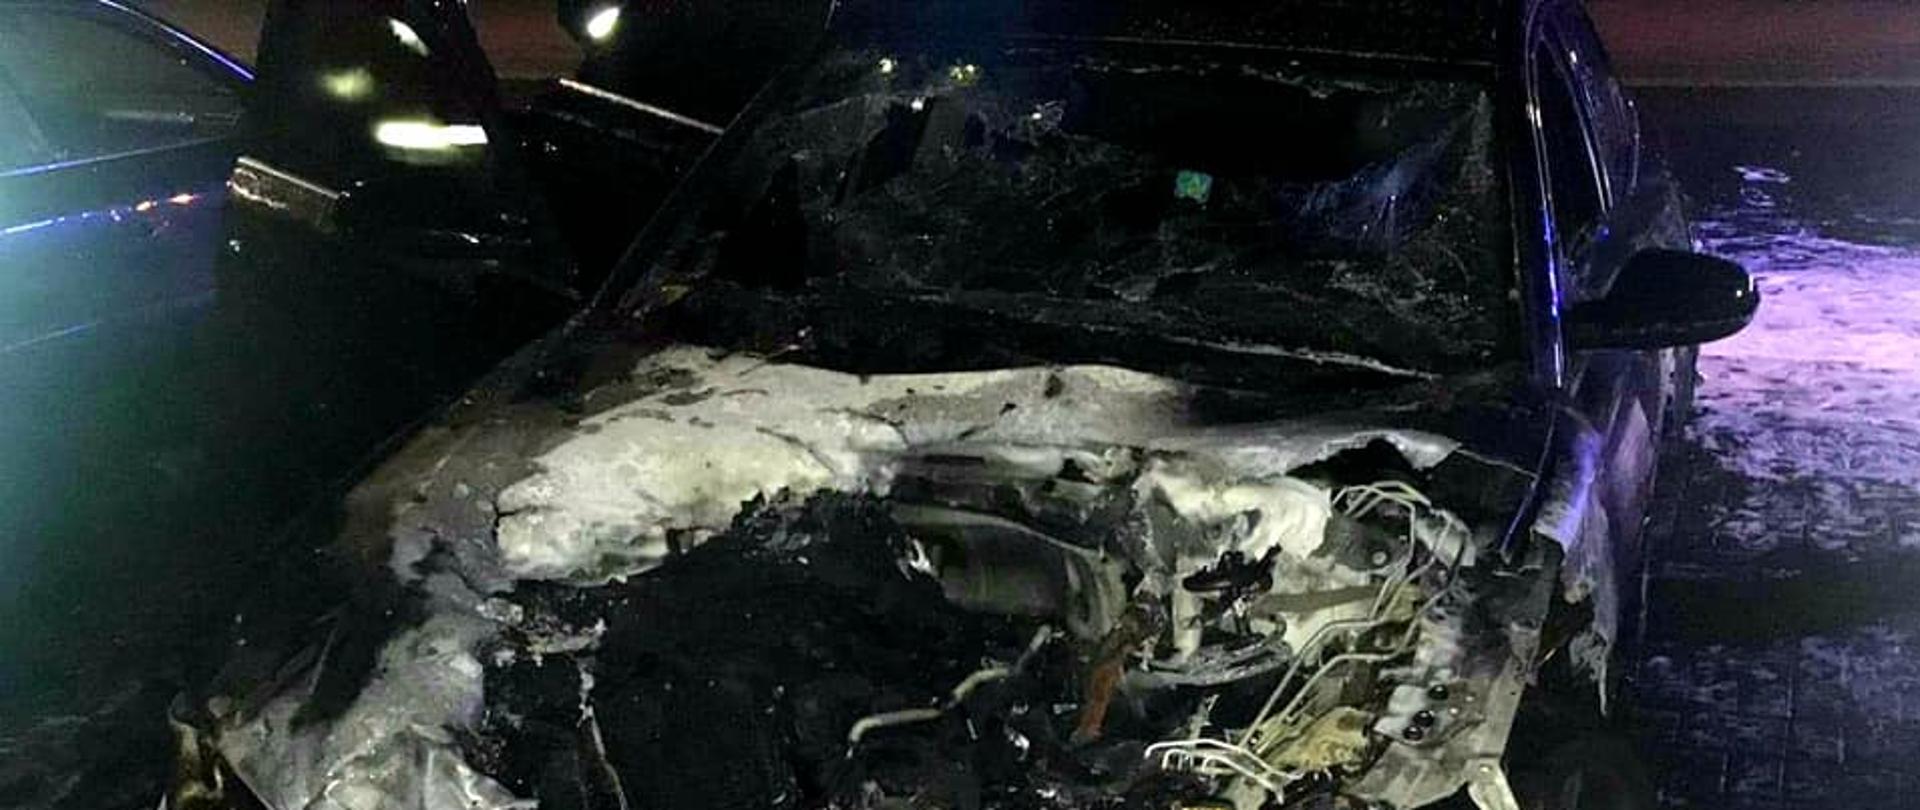 Zdjęcie przestawia wnętrze spalonego auta - audi A6, cała komora silnika uległa spaleniu.